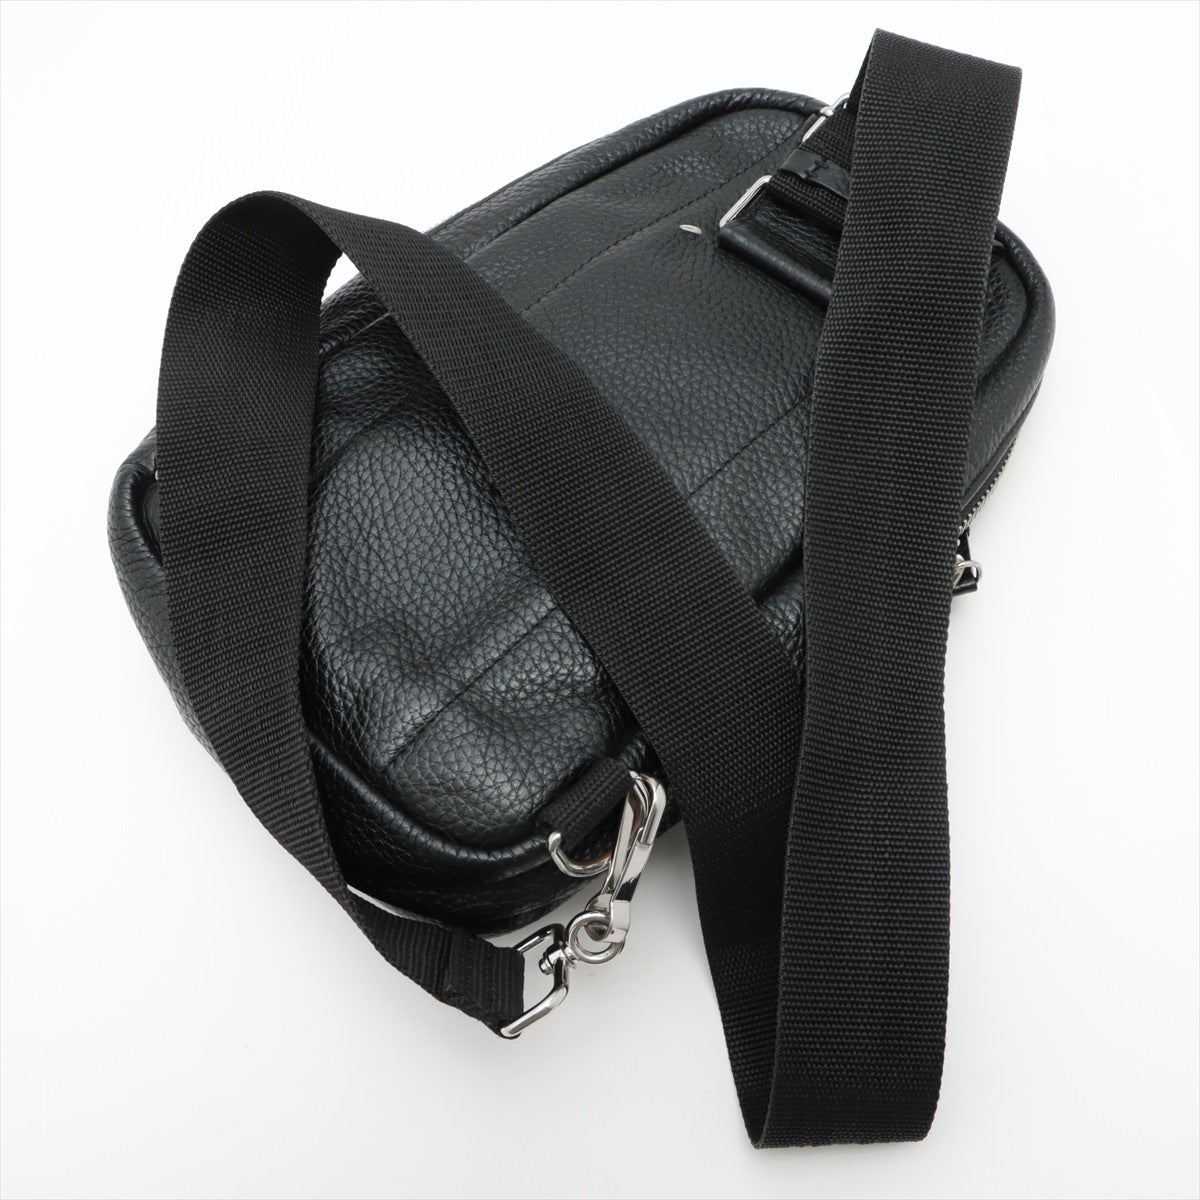 Maison Margiela 4 stitches Leather Sling backpack Black S55WA0066